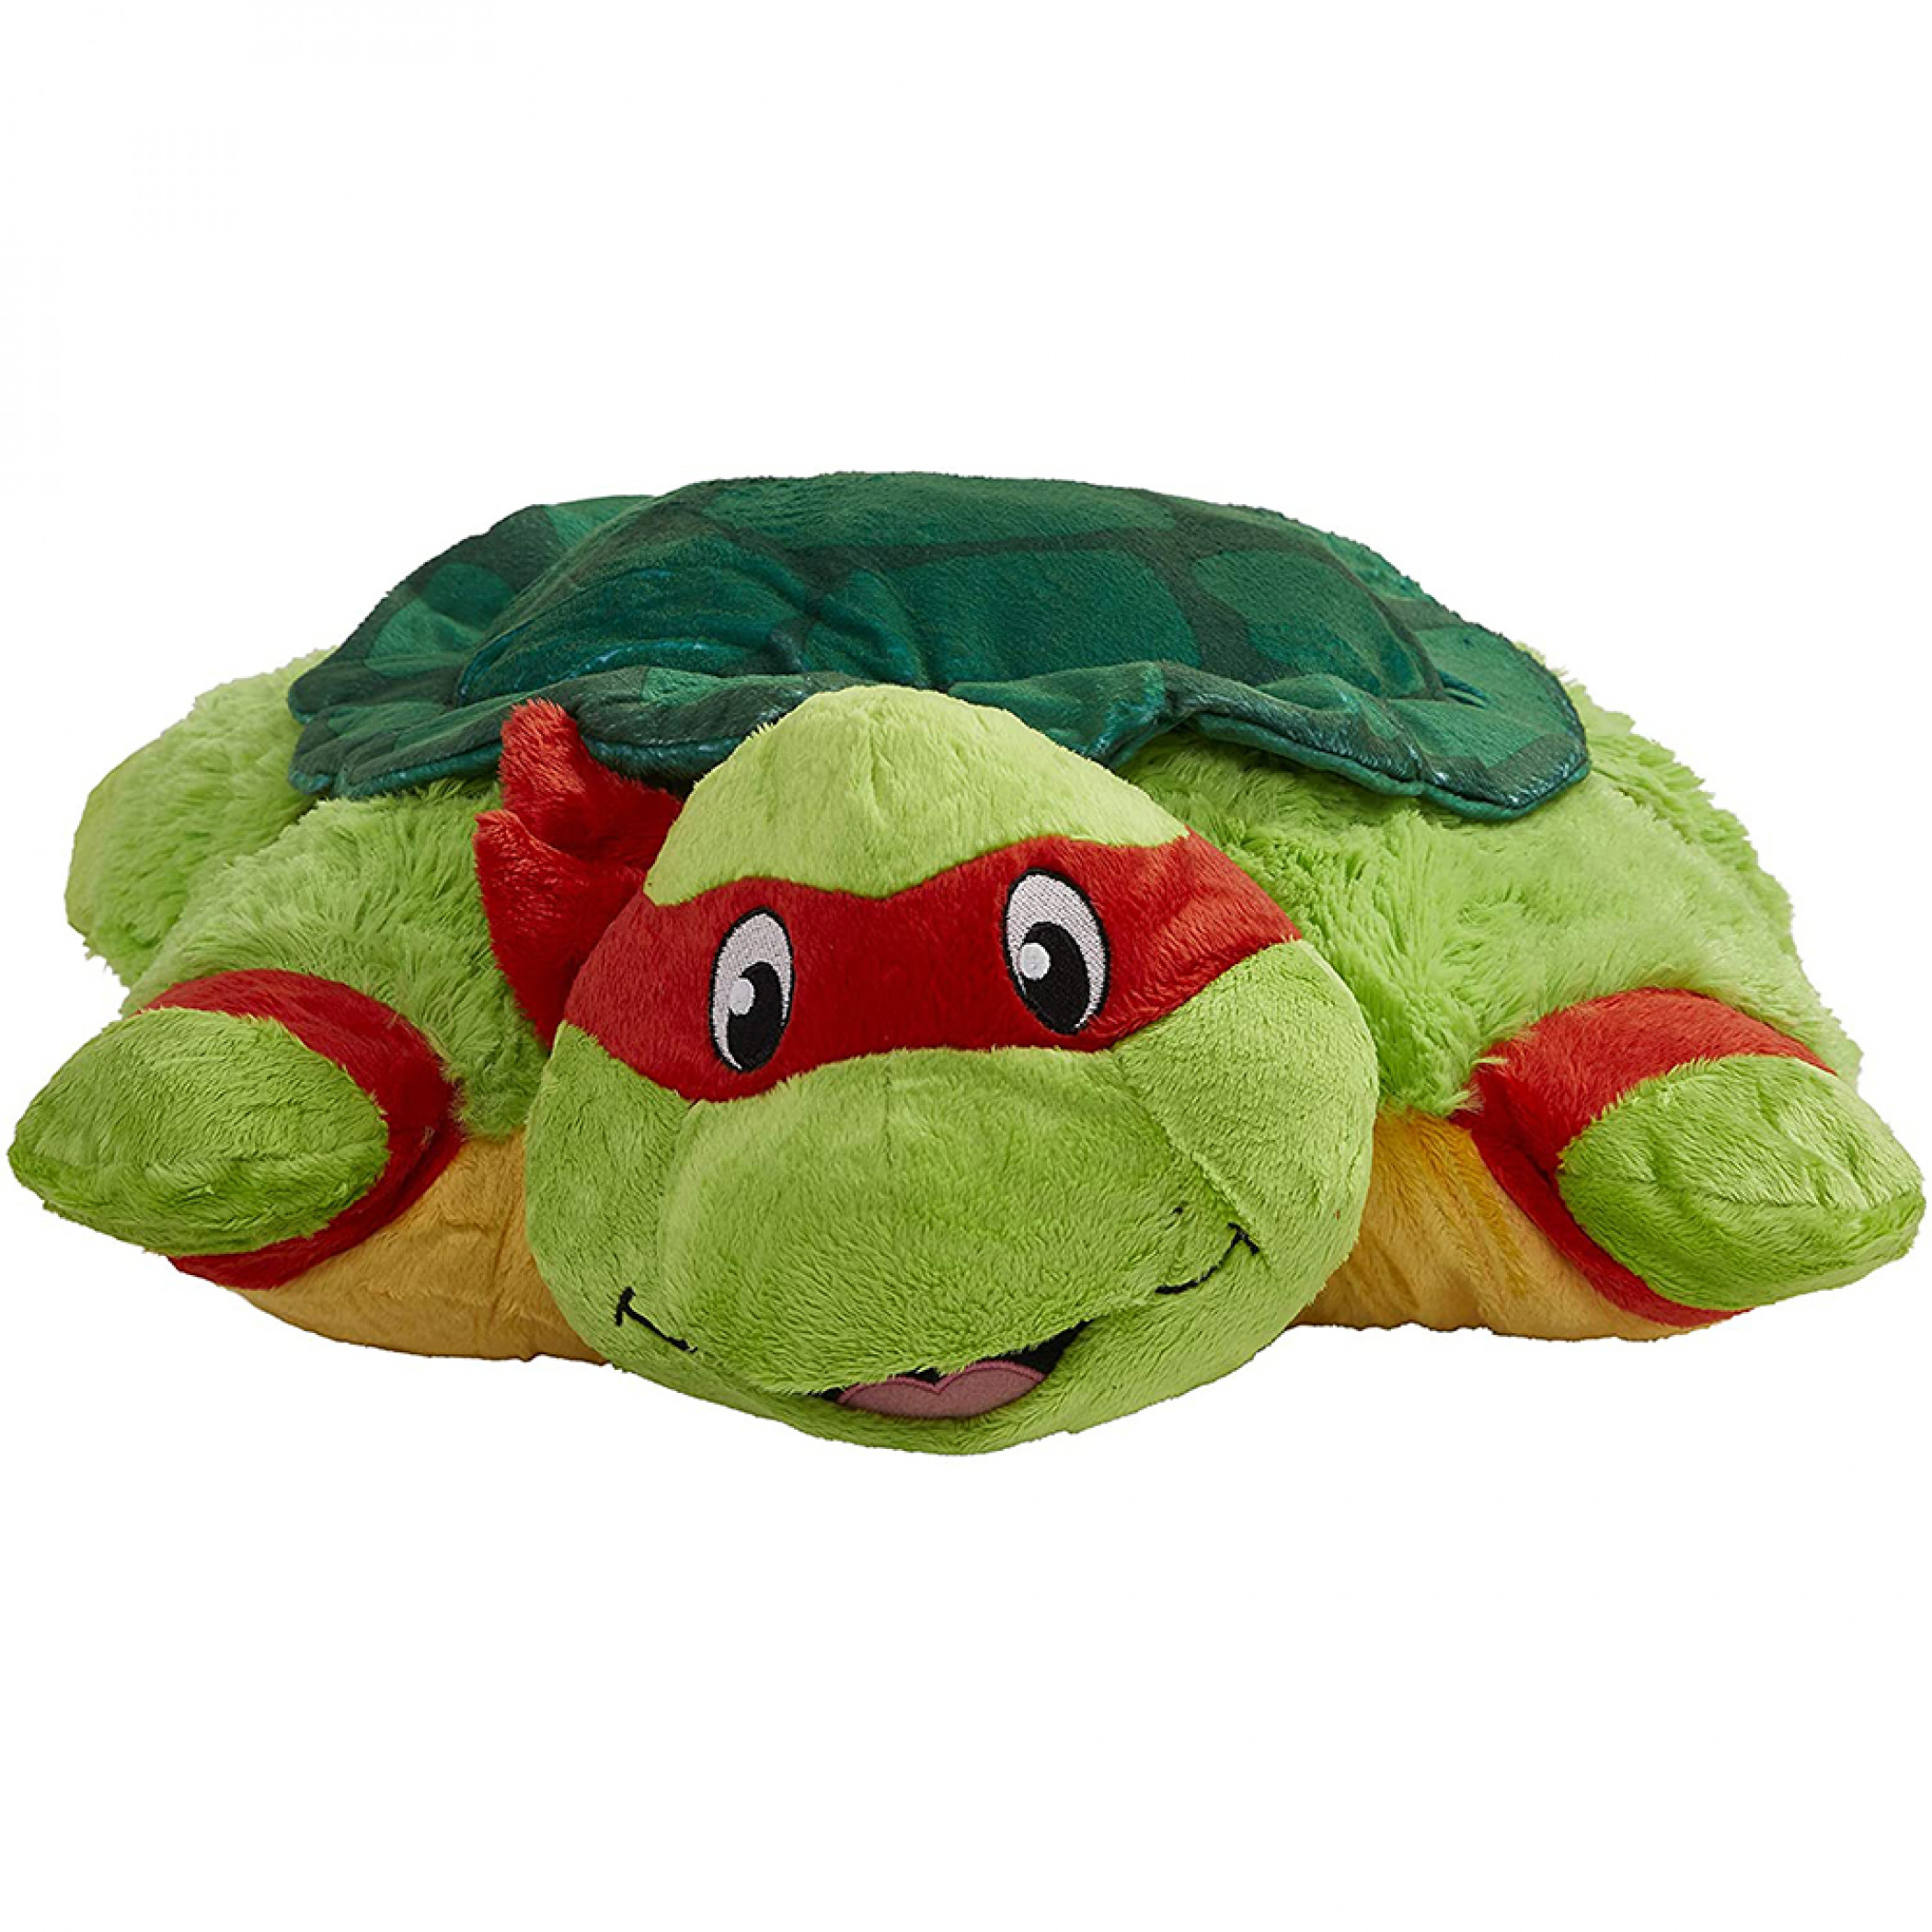 Raphael Pillow Pet - Teenage Mutant Ninja Turtles Stuffed Animal Plush Toy